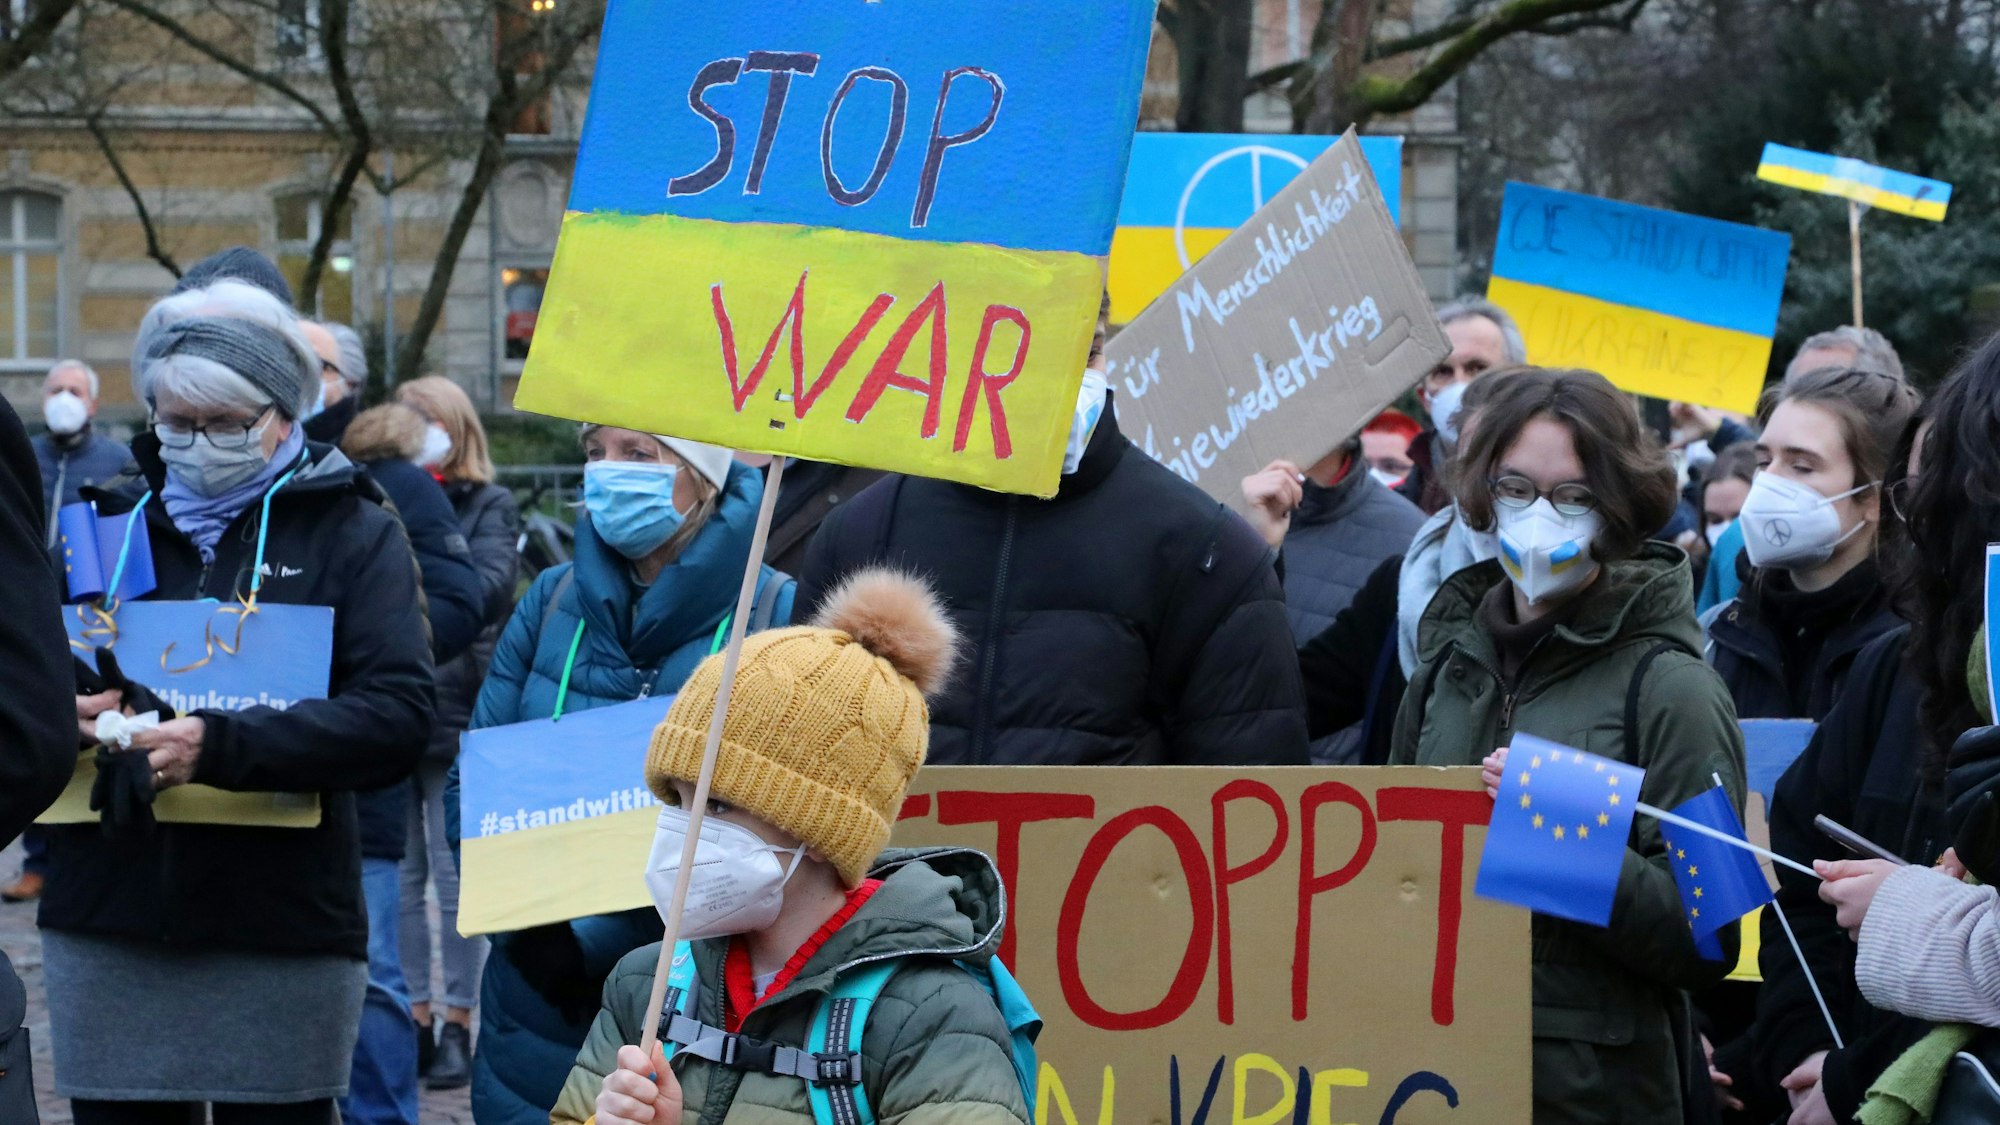 Menschen mit Plakaten auf den "Stop War" und "Stoppt den Krieg" zu lesen ist, stehen bei einer Demonstration gegen den Krieg in der Ukraine auf dem Konrad-Adenauer-Platz in Bergisch Gladbach.